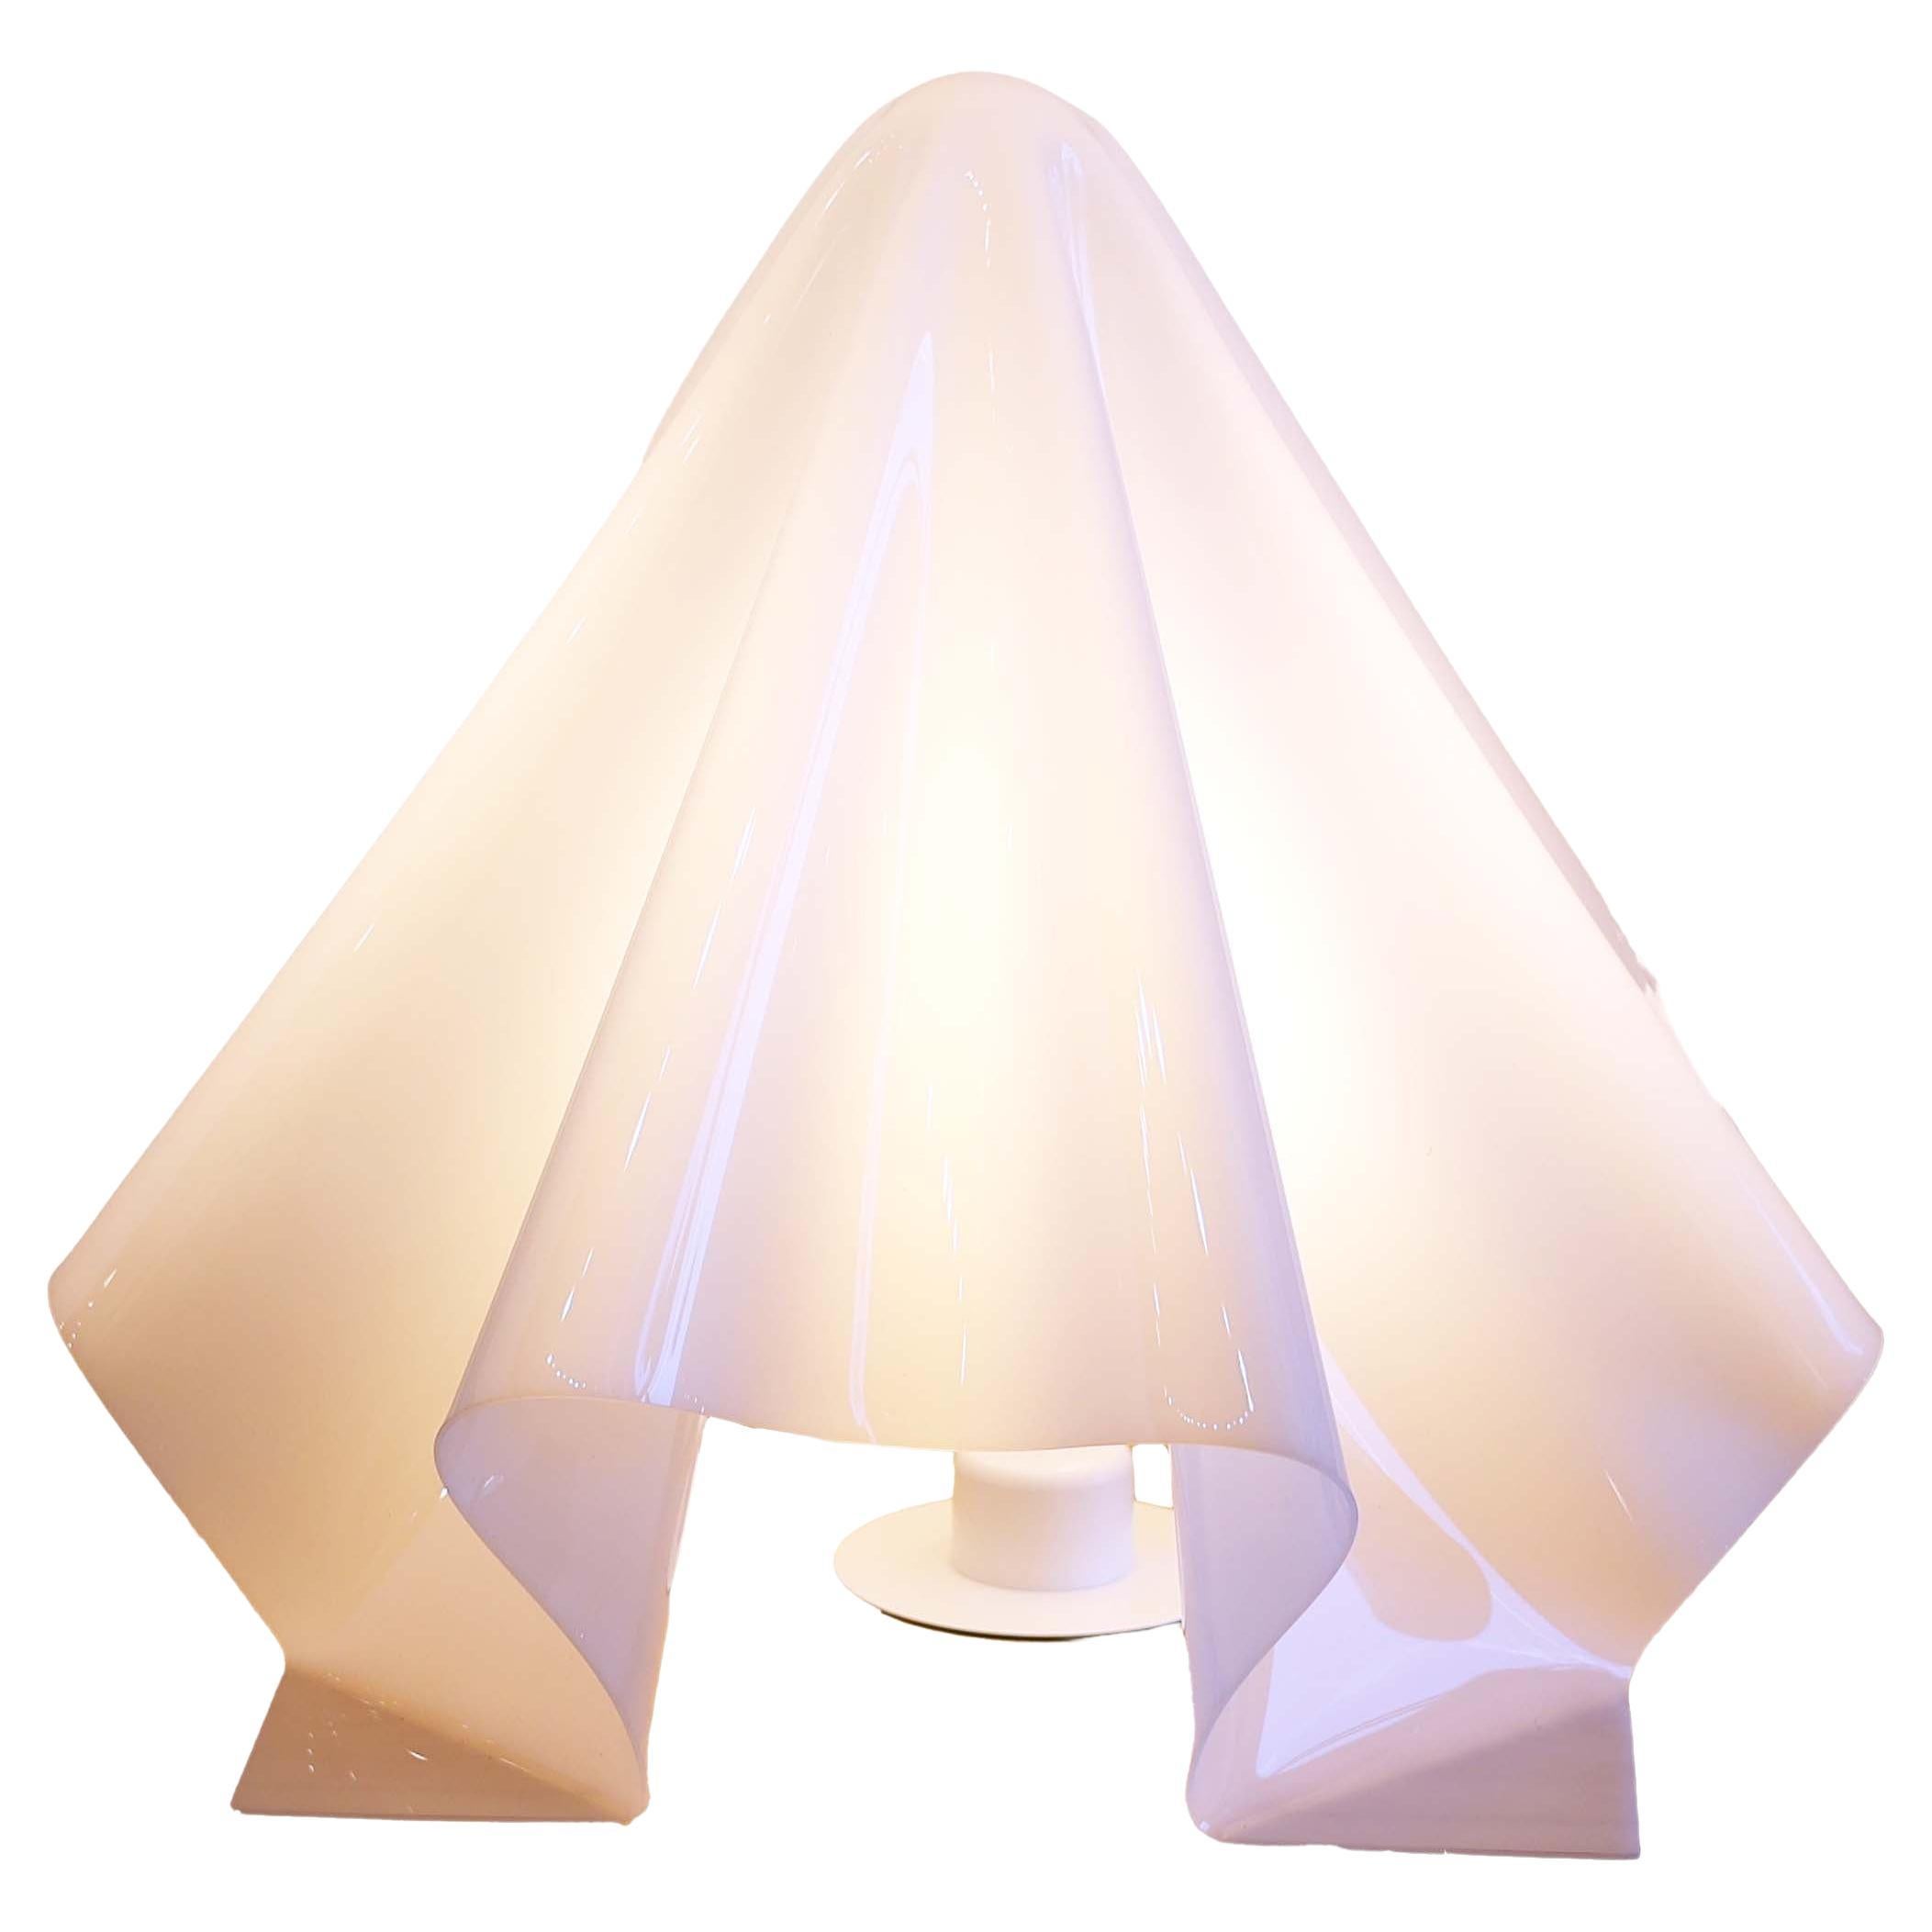 Oba-Q Ghost Lamp by Shiro Kuramata